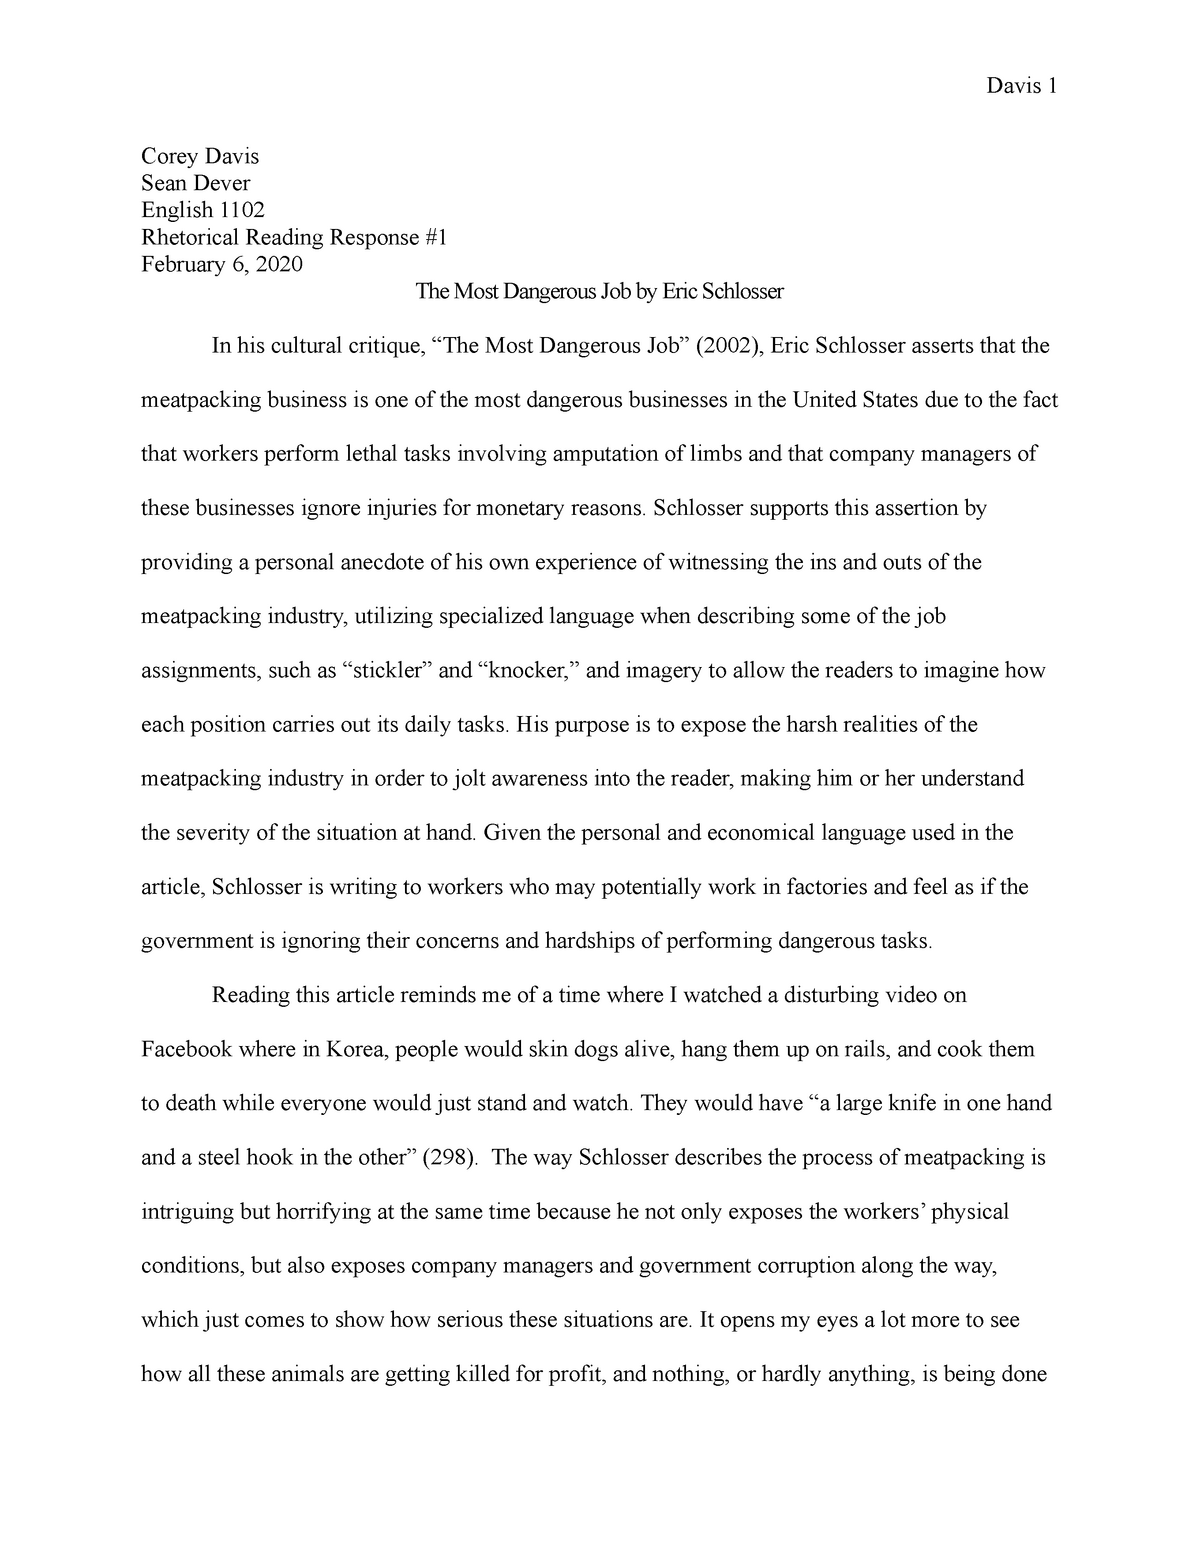 reading response short essay